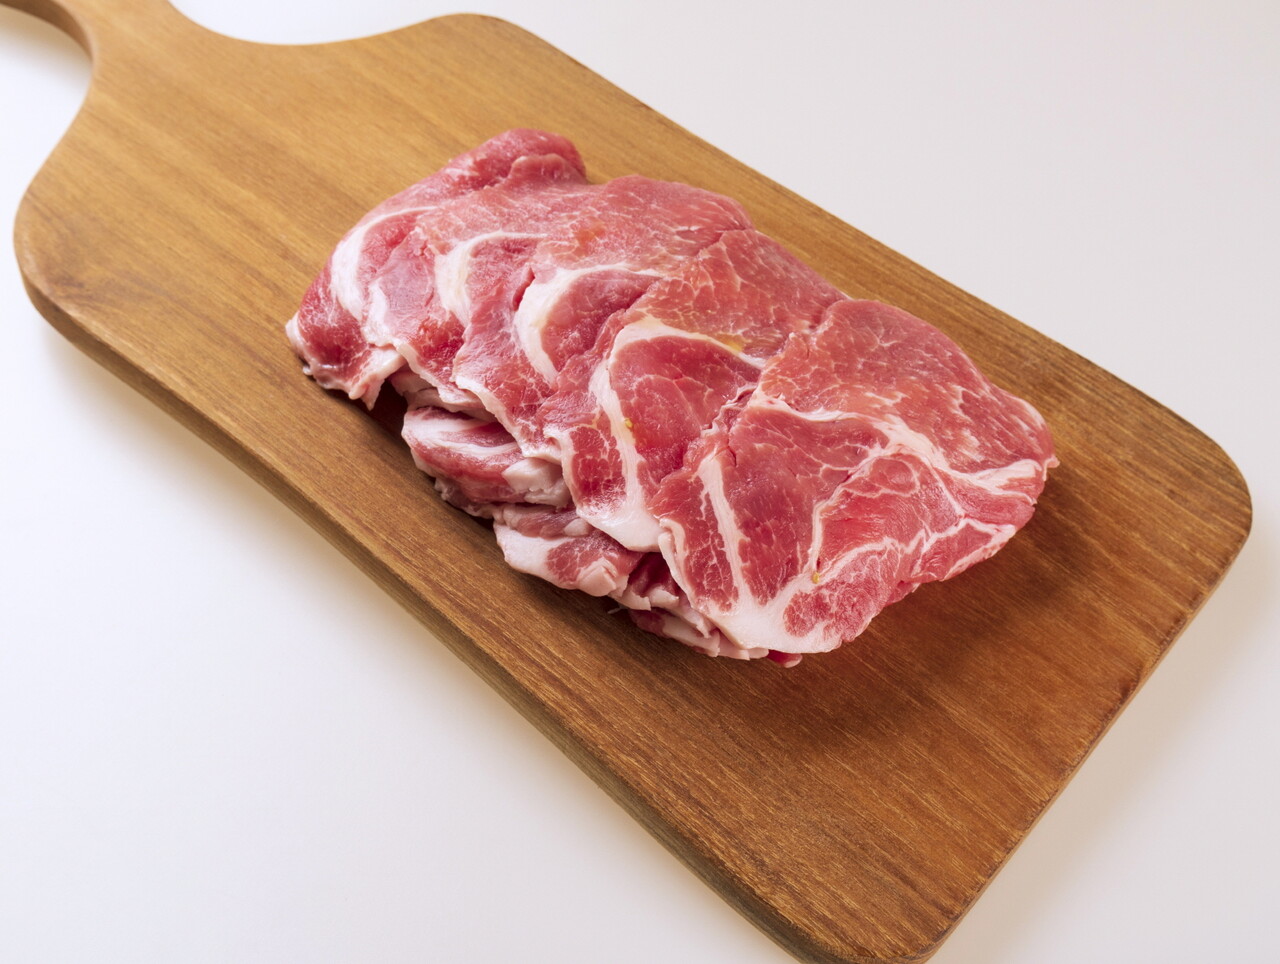 국내산 돼지고기 한돈은 지방(6%) 대비 단백질(21.1%)이 3배 이상 많은 대표적인 천연 단백질 식품이다.(한돈자조금 제공)